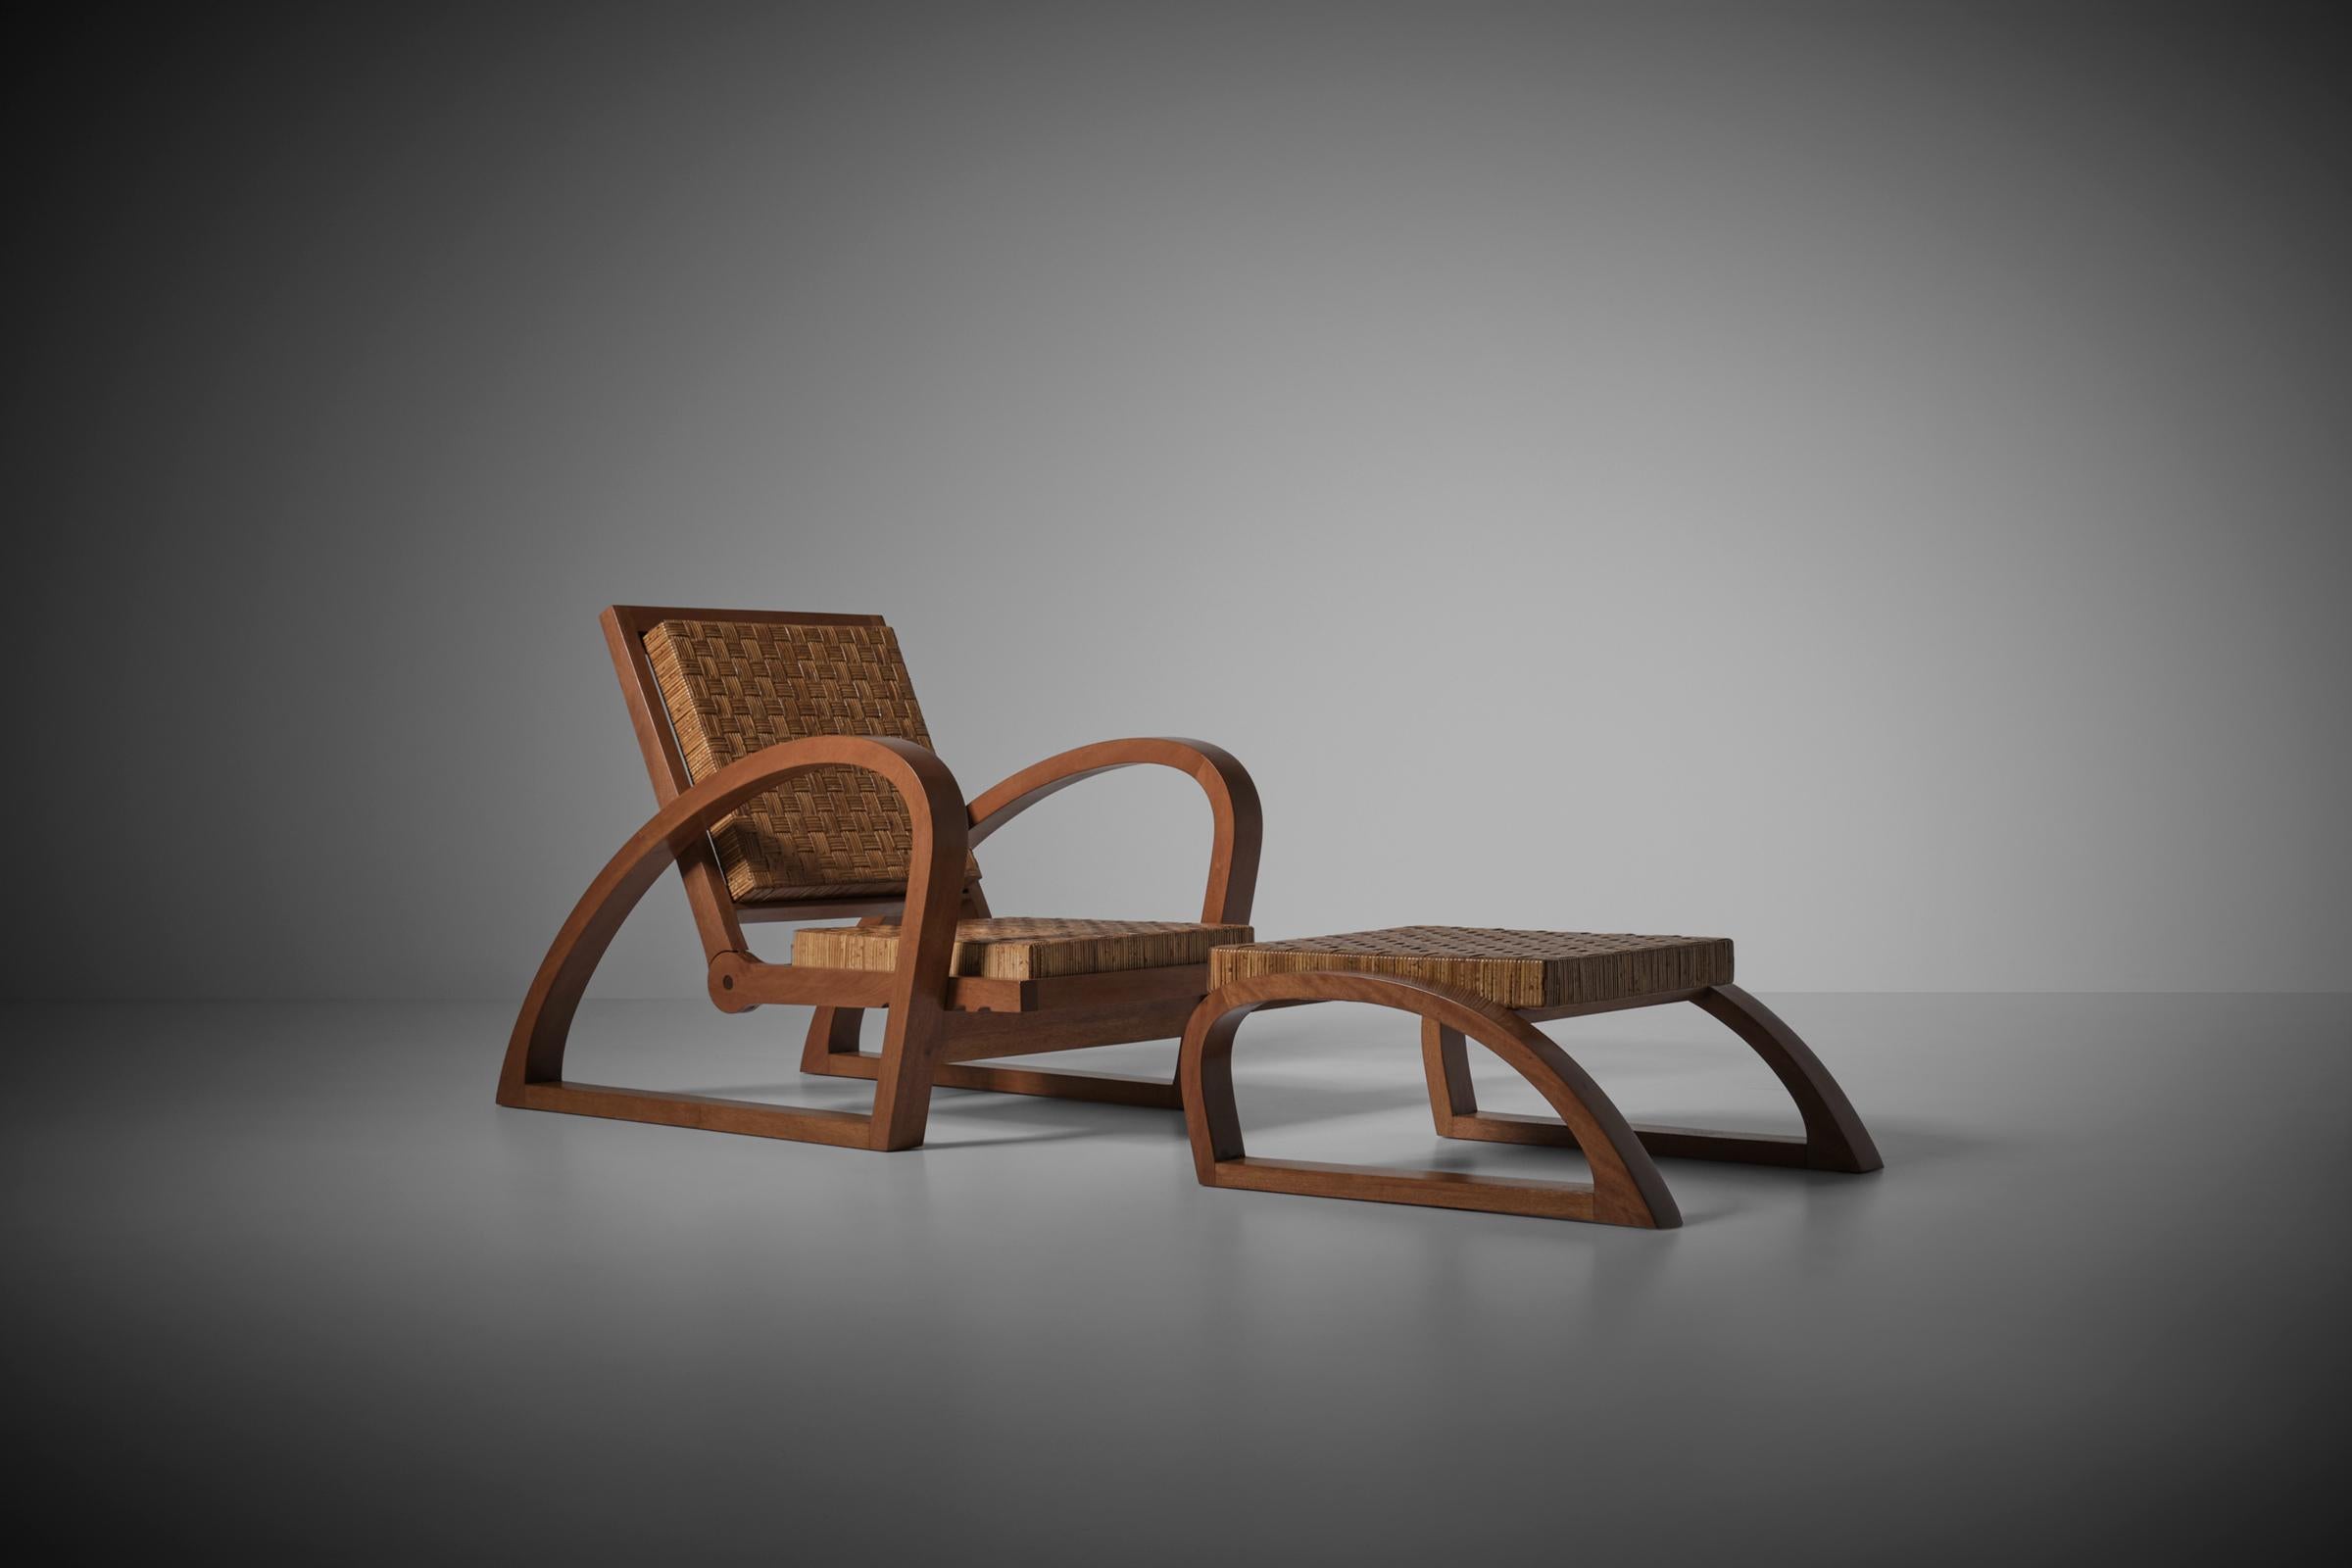 Wunderschöner Sessel und Hocker von Francis Jourdain, Frankreich, 1920er Jahre. Das Design zeigt einprägsame 'schnelle' geschwungene Linien, wunderschön gefertigt aus veredeltem massivem Birnbaumholz, das eine tolle Holzmaserung zeigt. Wir haben